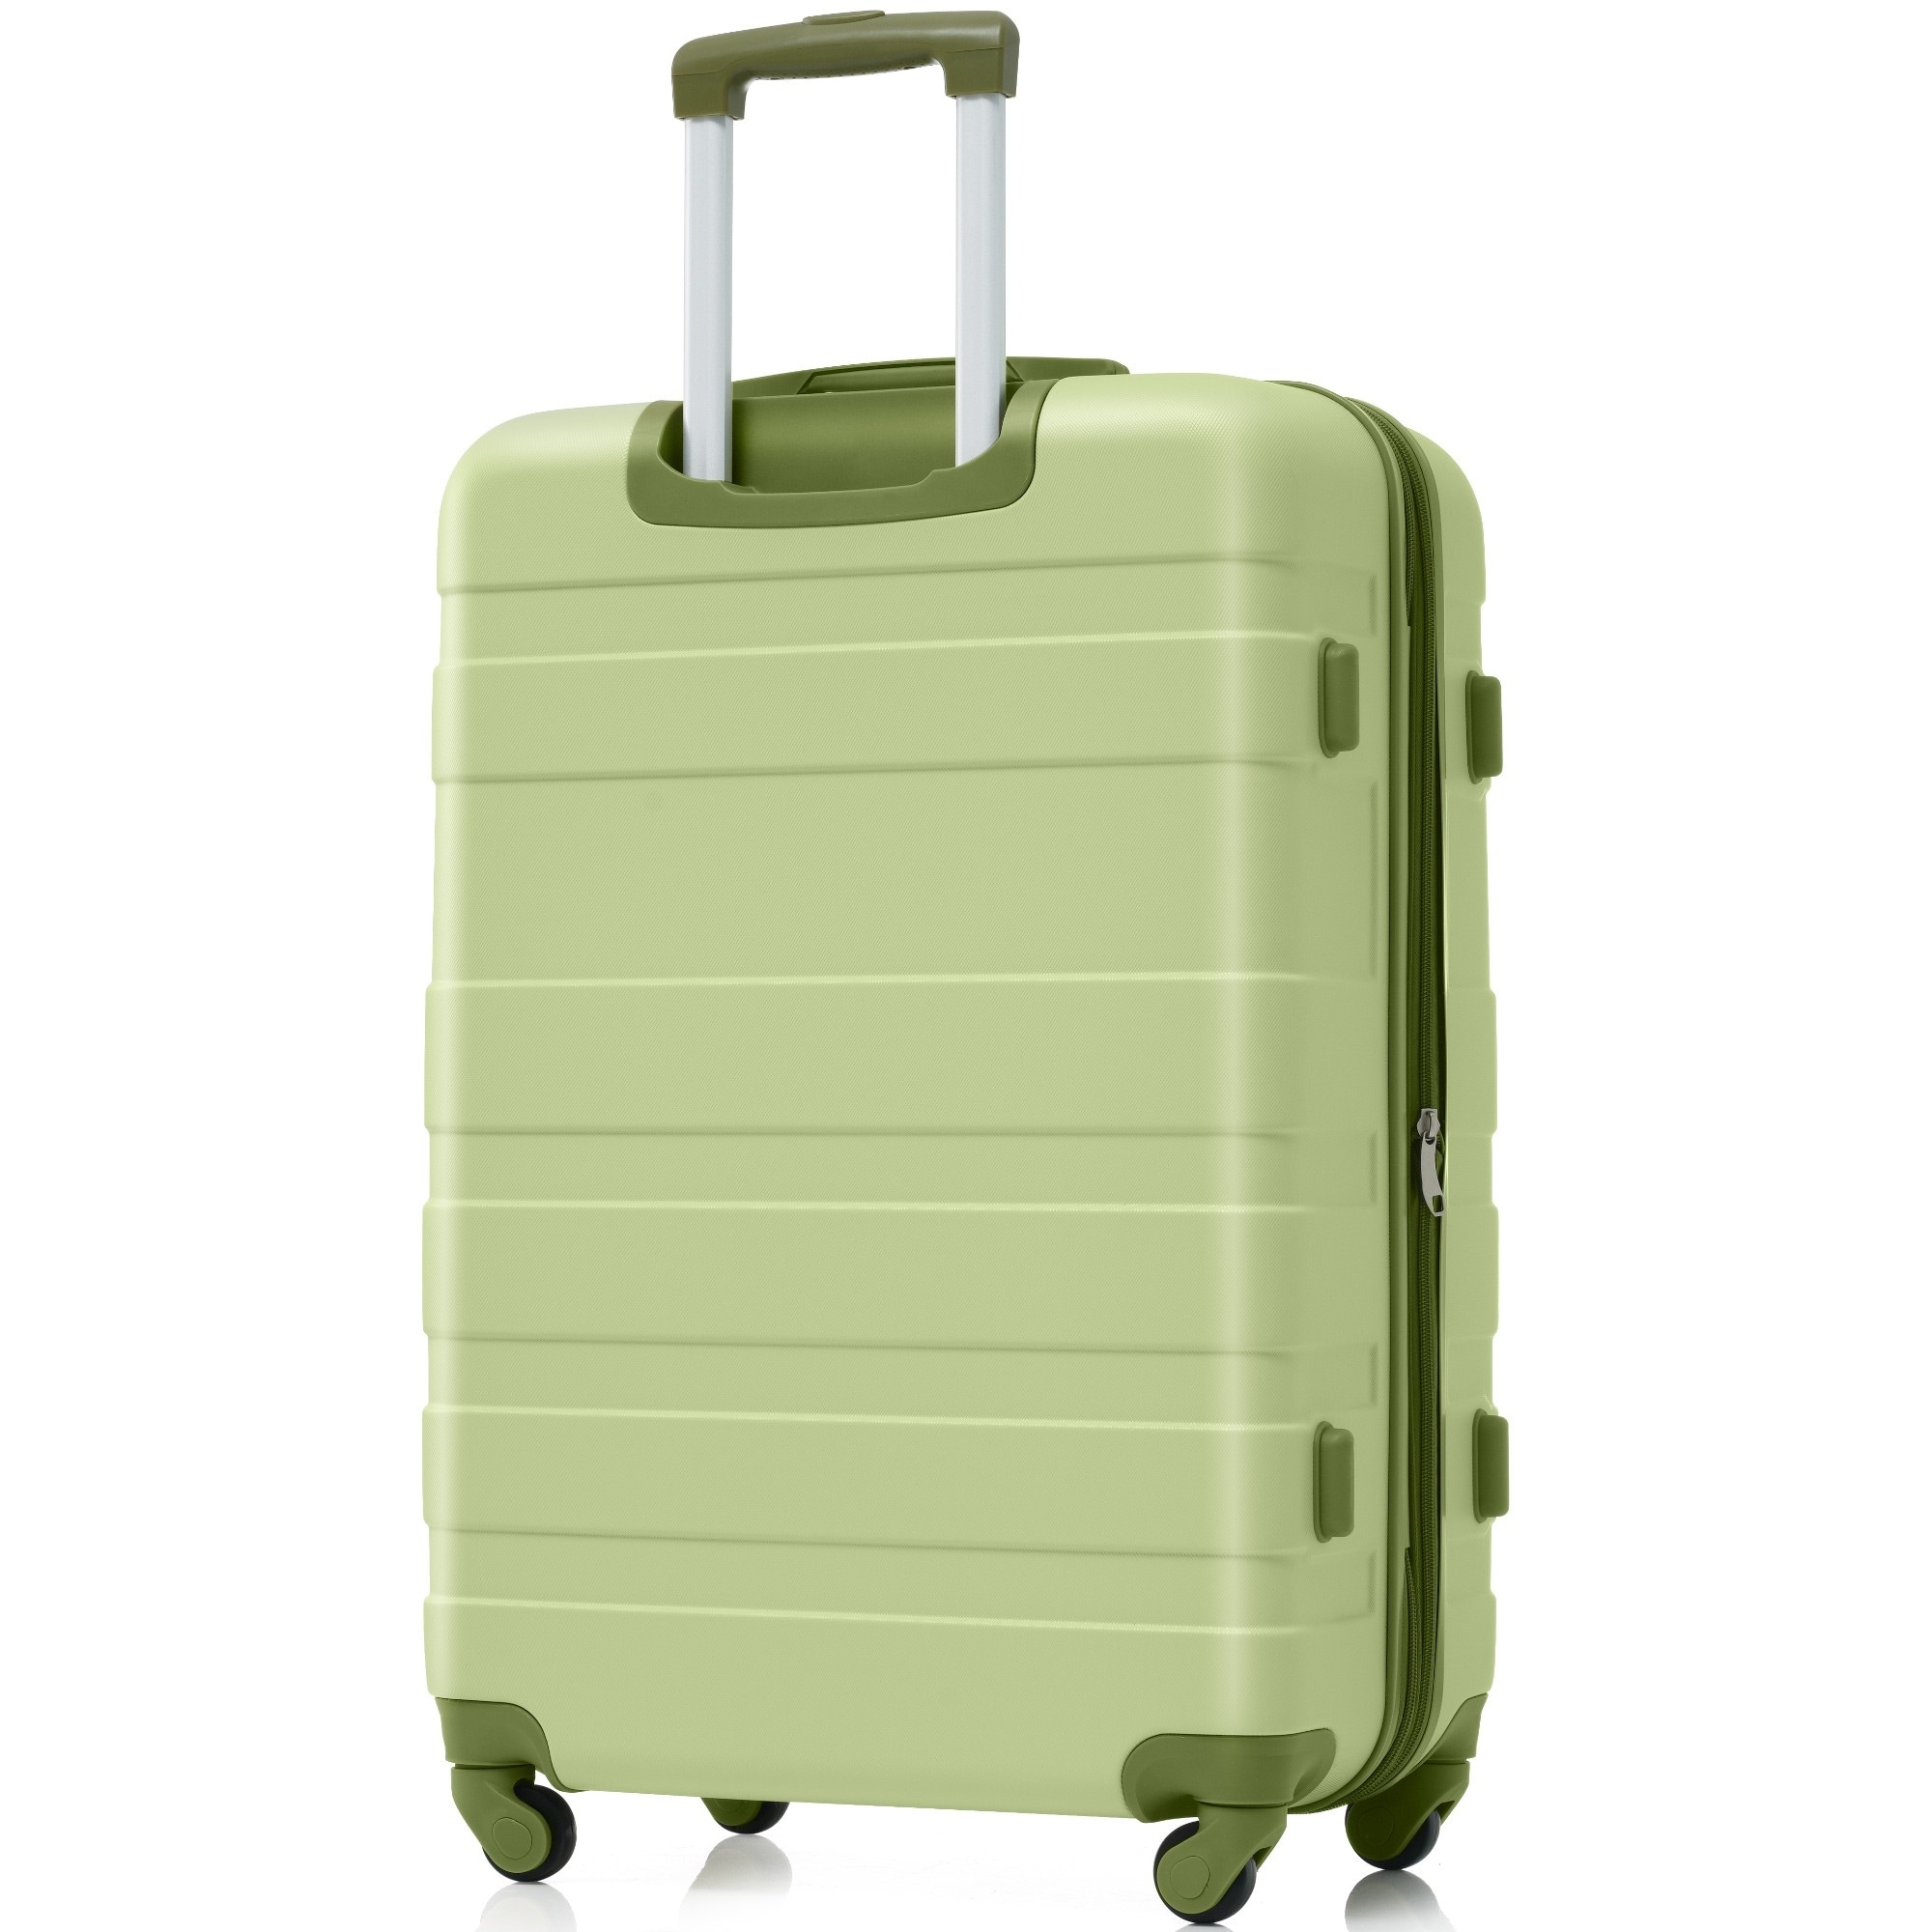 Luggage Sets,New 3pcs Clearance Luggage Hardside L...